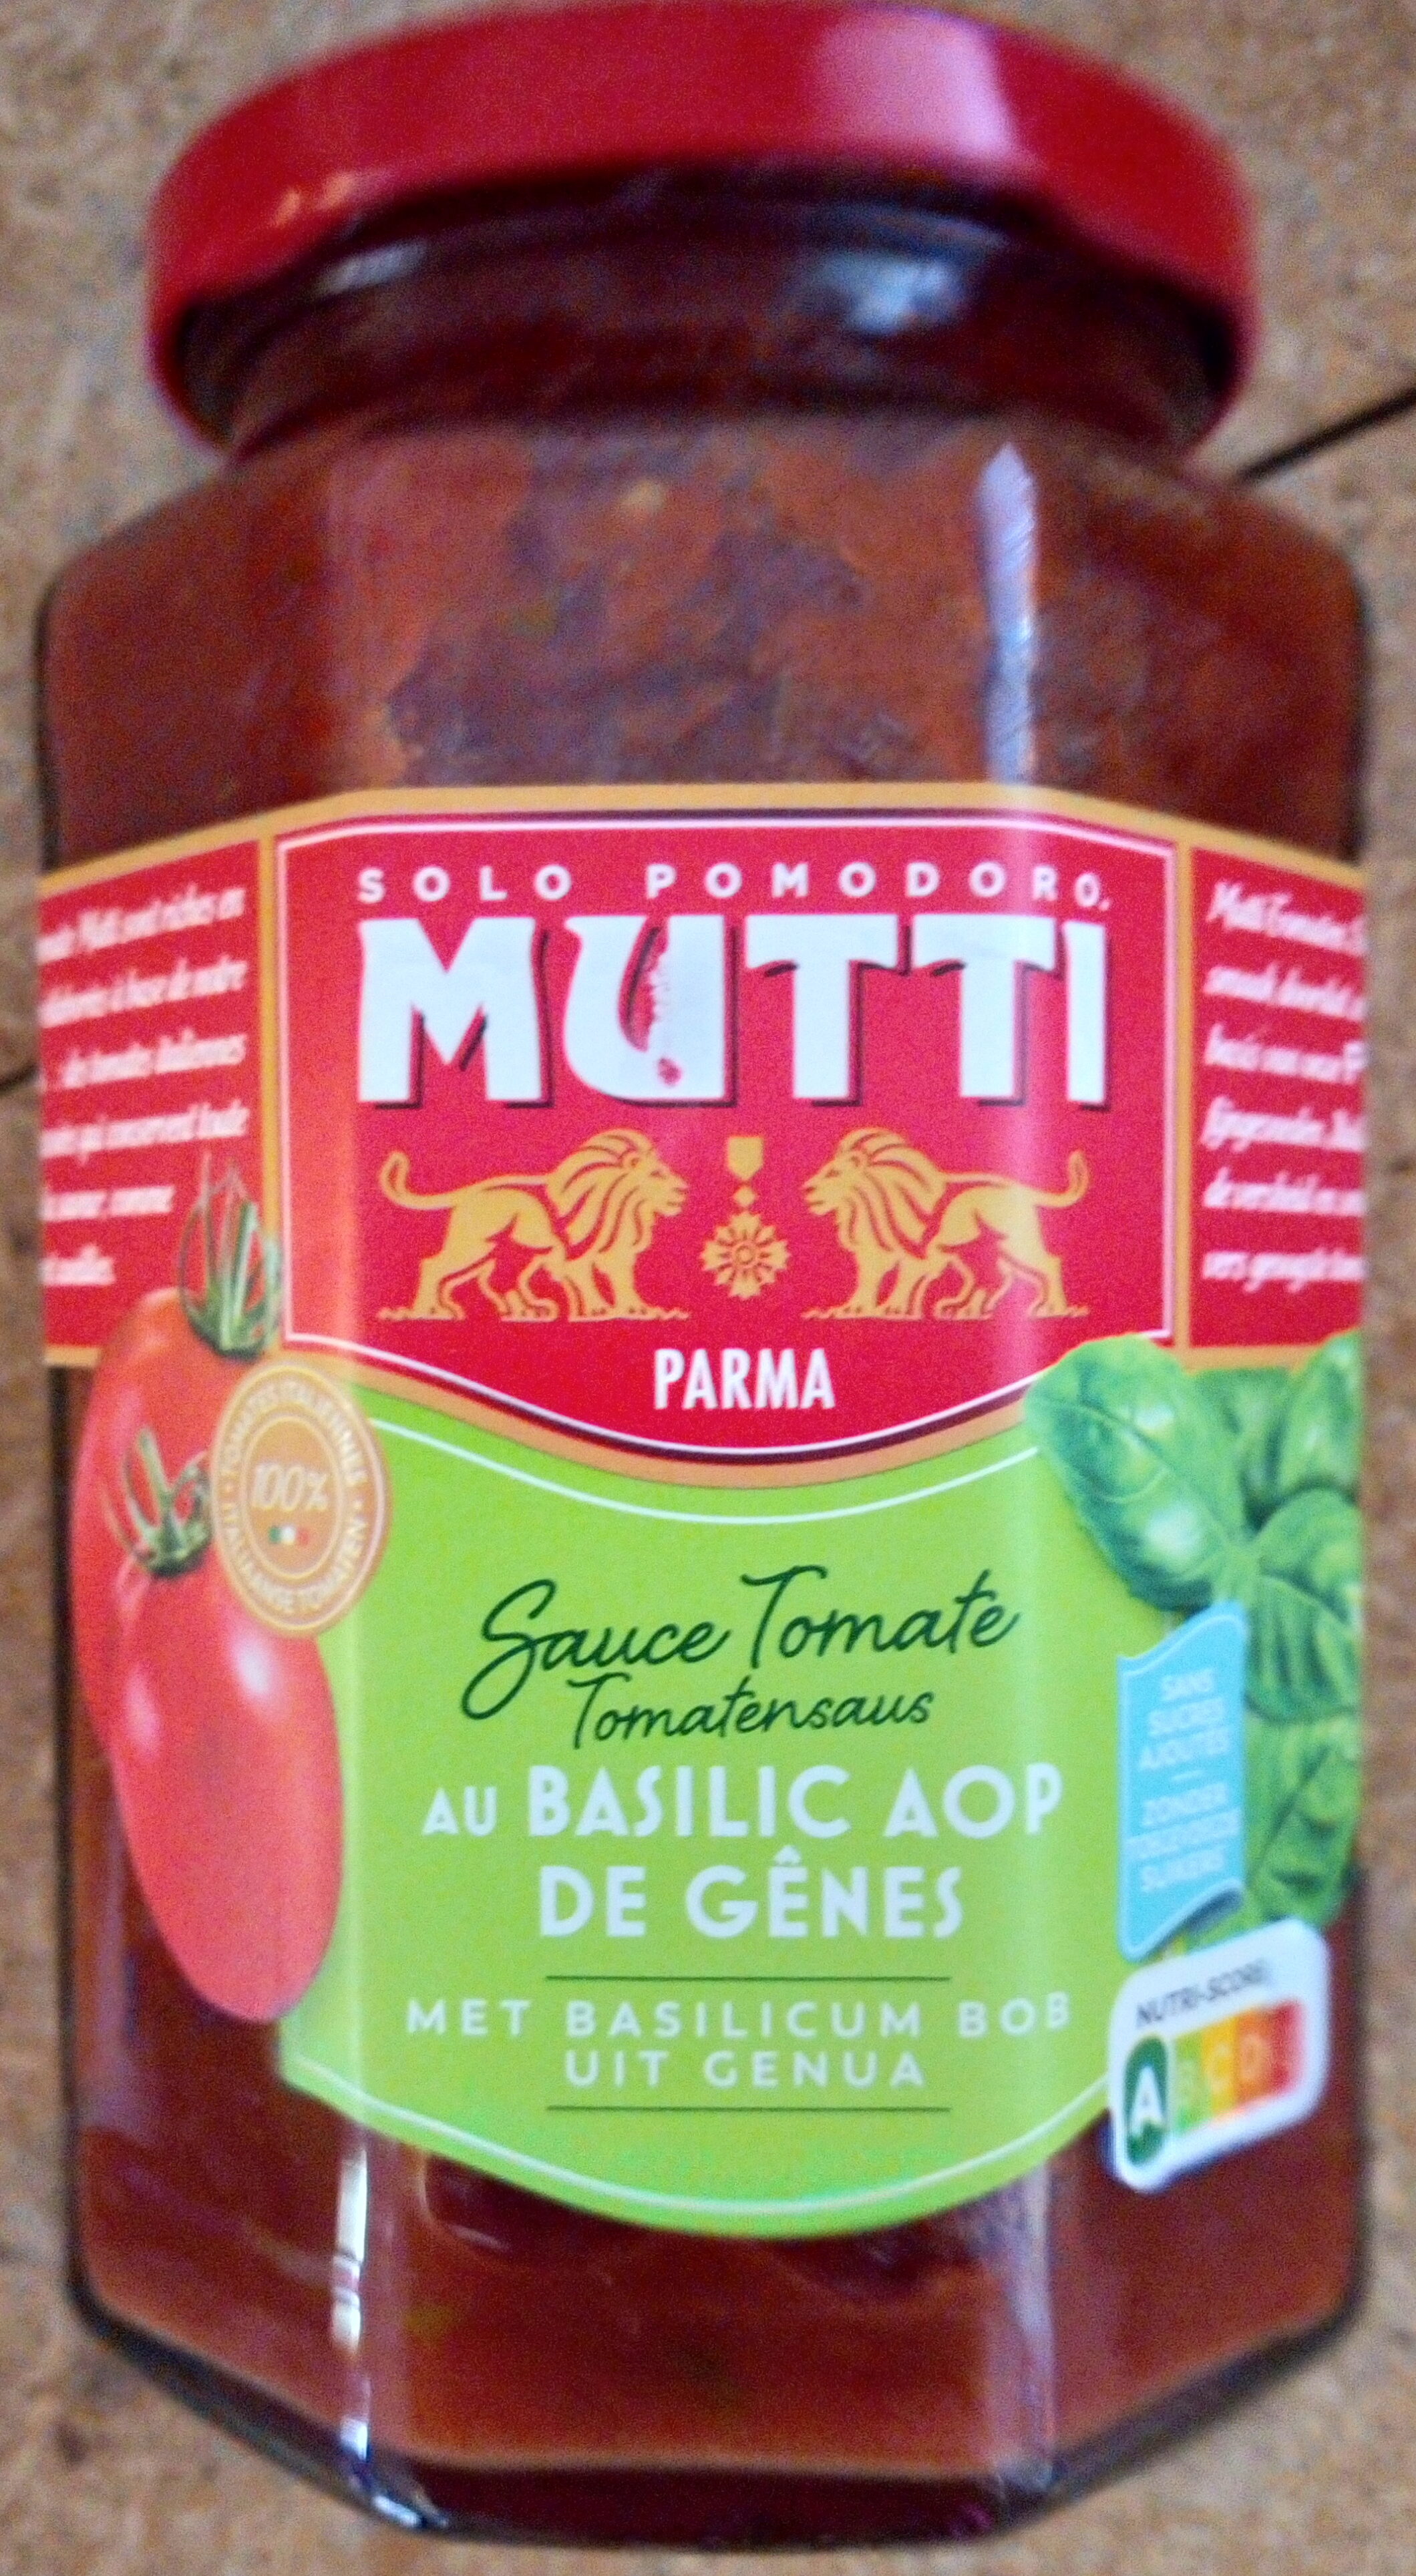 Sauce tomate au basilic AOP de Gênes - Product - fr